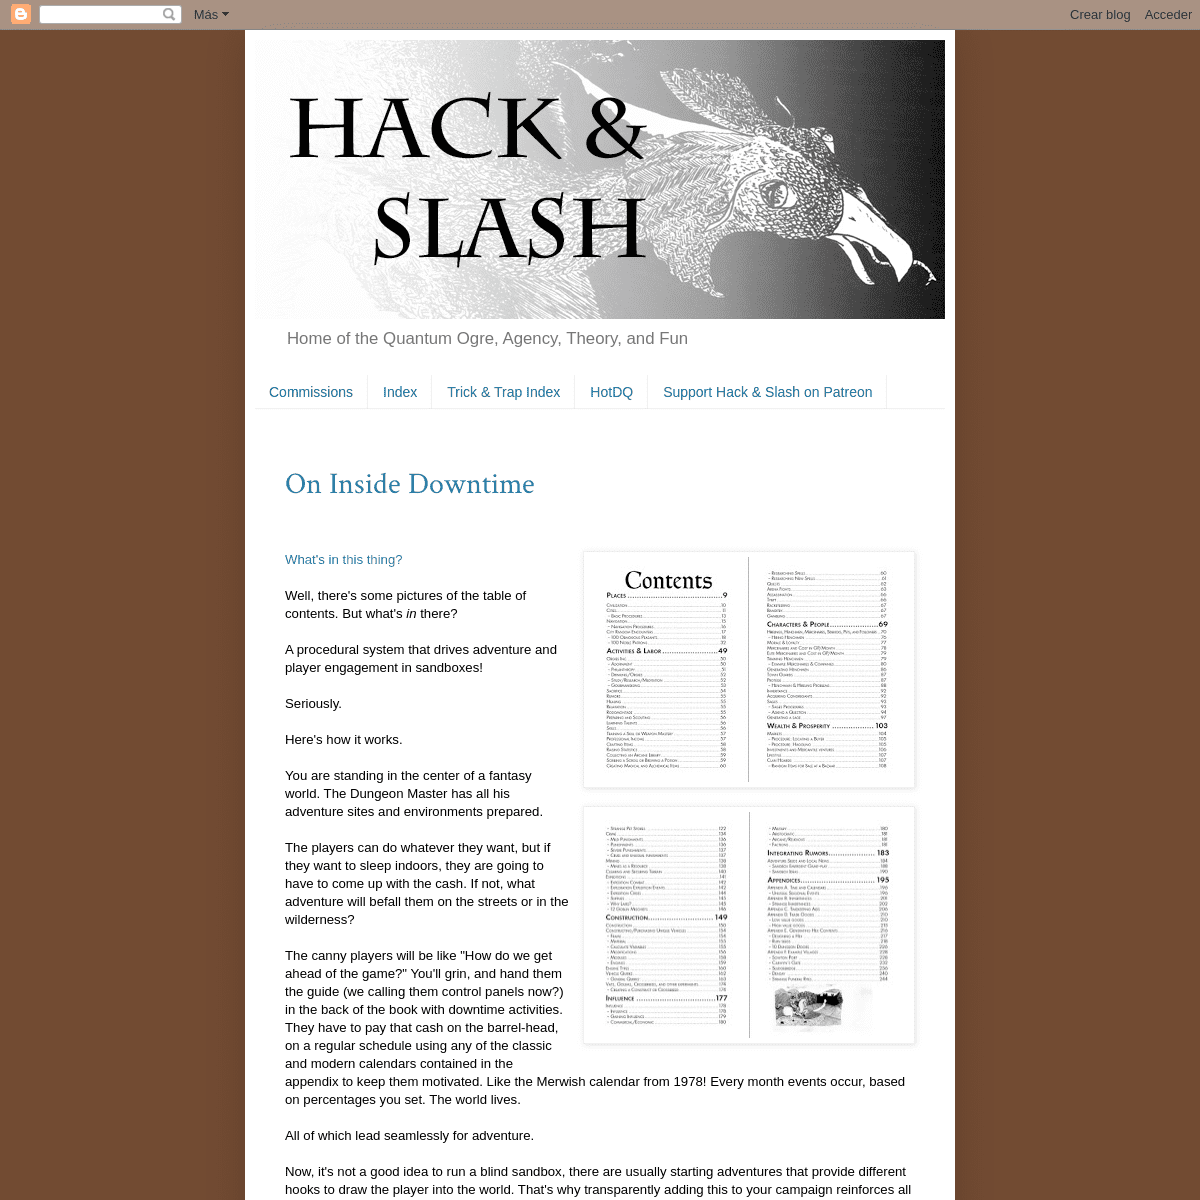 A complete backup of hackslashmaster.blogspot.com